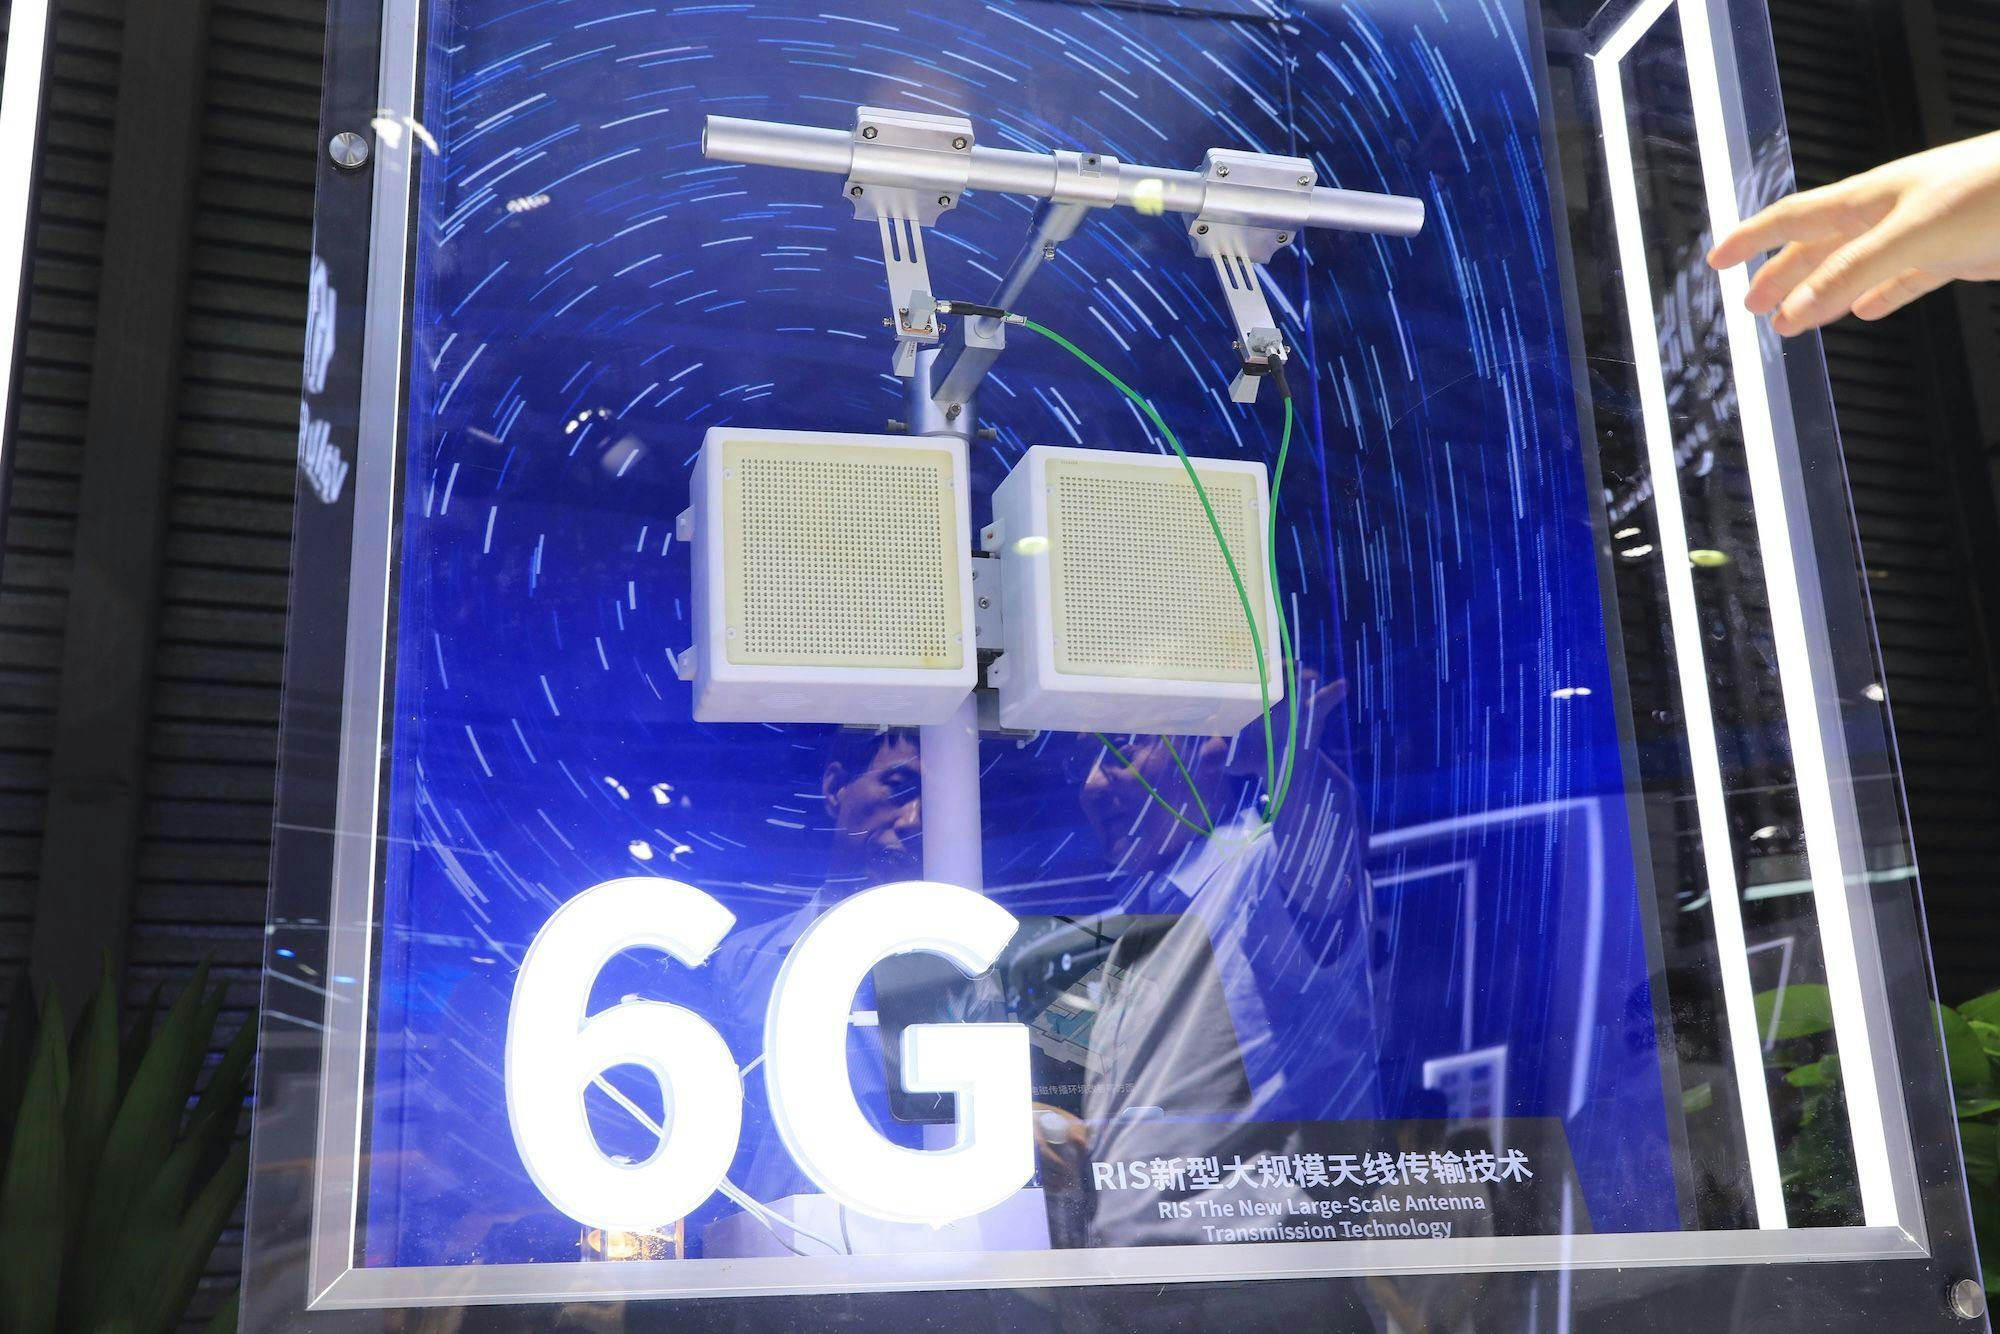 China Technologie, Mobile Netze, Kommunikationstechnologie: 6G RIS New Large-Scale Antenna Transmission Technology wird während des Mobile World Congress (MWC) Shanghai 2023 im Shanghai New International Expo Centre (SNIEC) vorgestellt